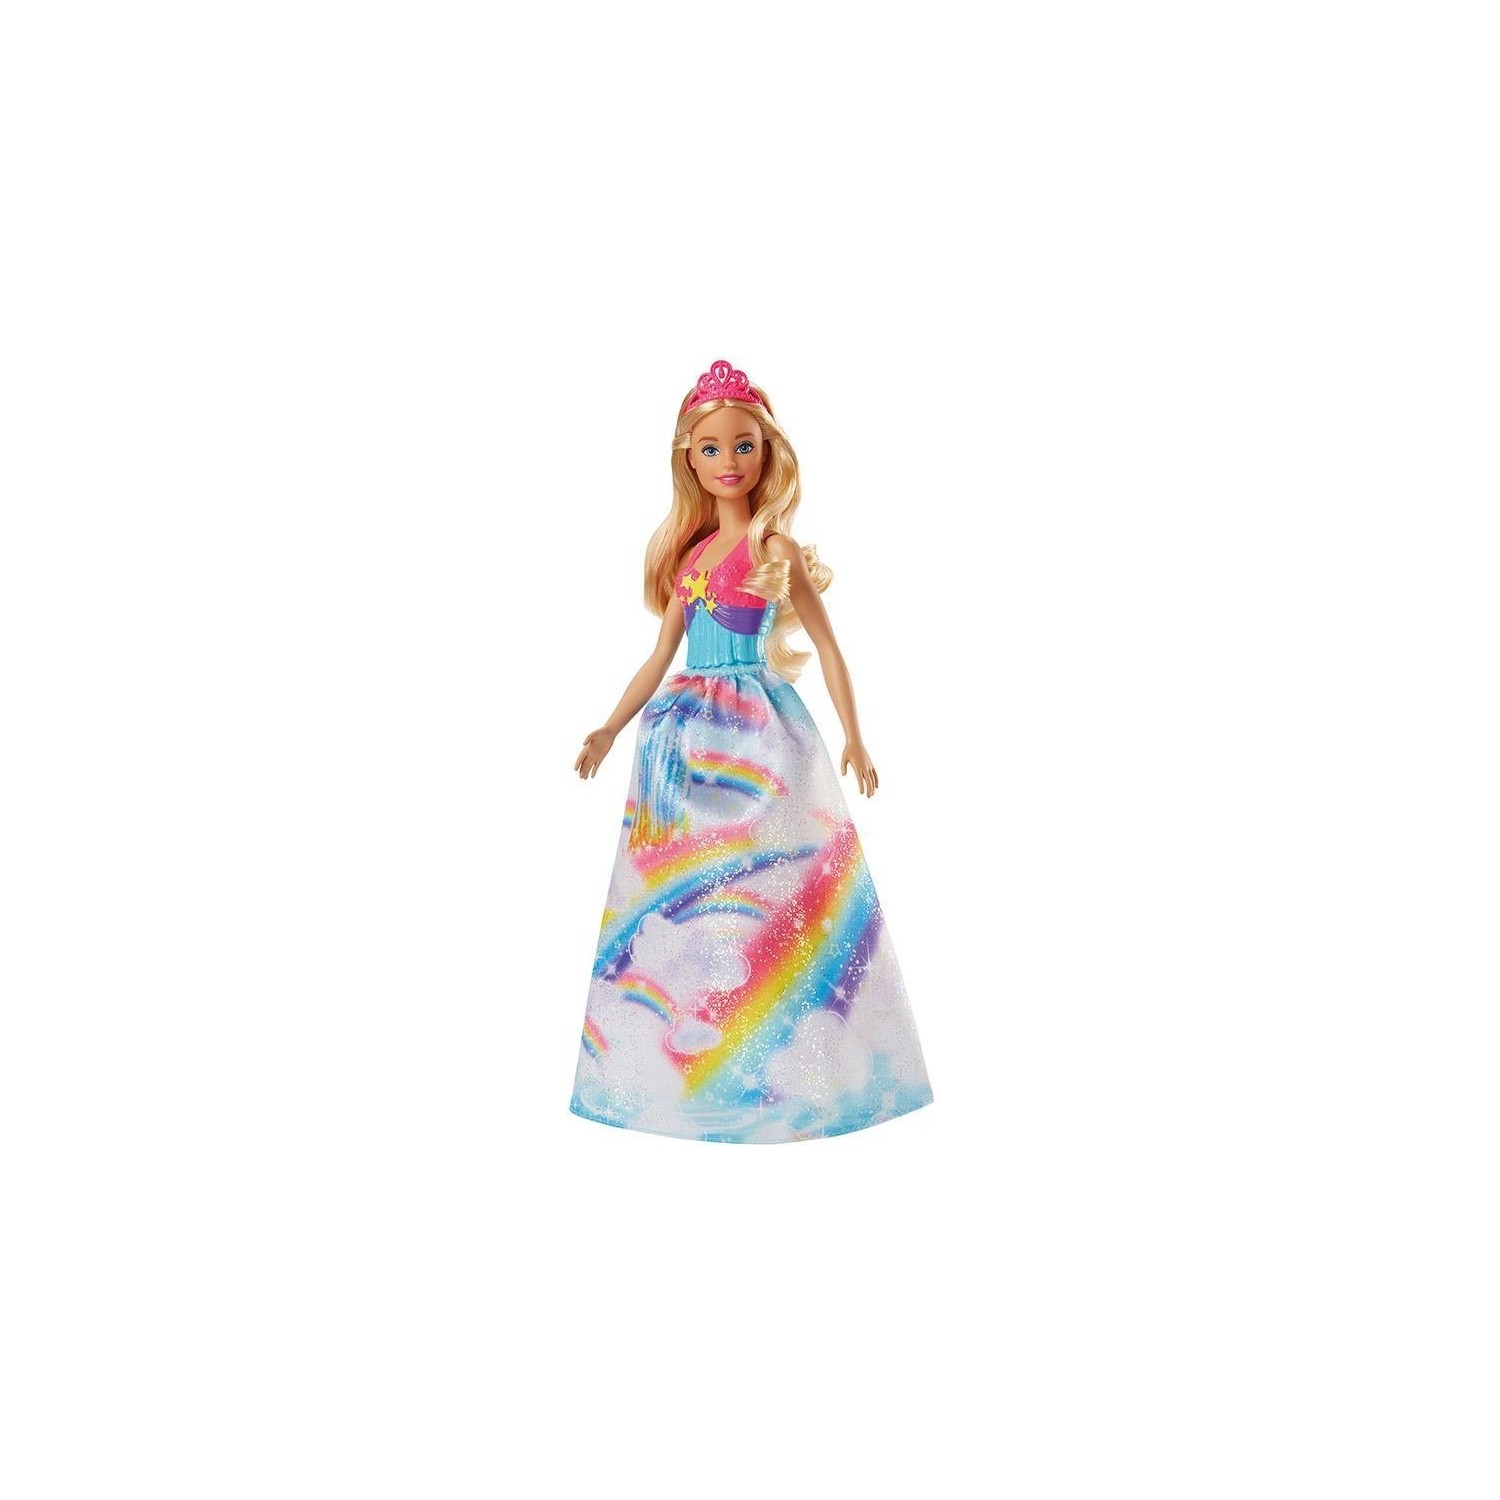 Кукла Barbie Dreamtopia Princess Dolls Fjc94 кукла barbie dreamtopia winged fairy frb08